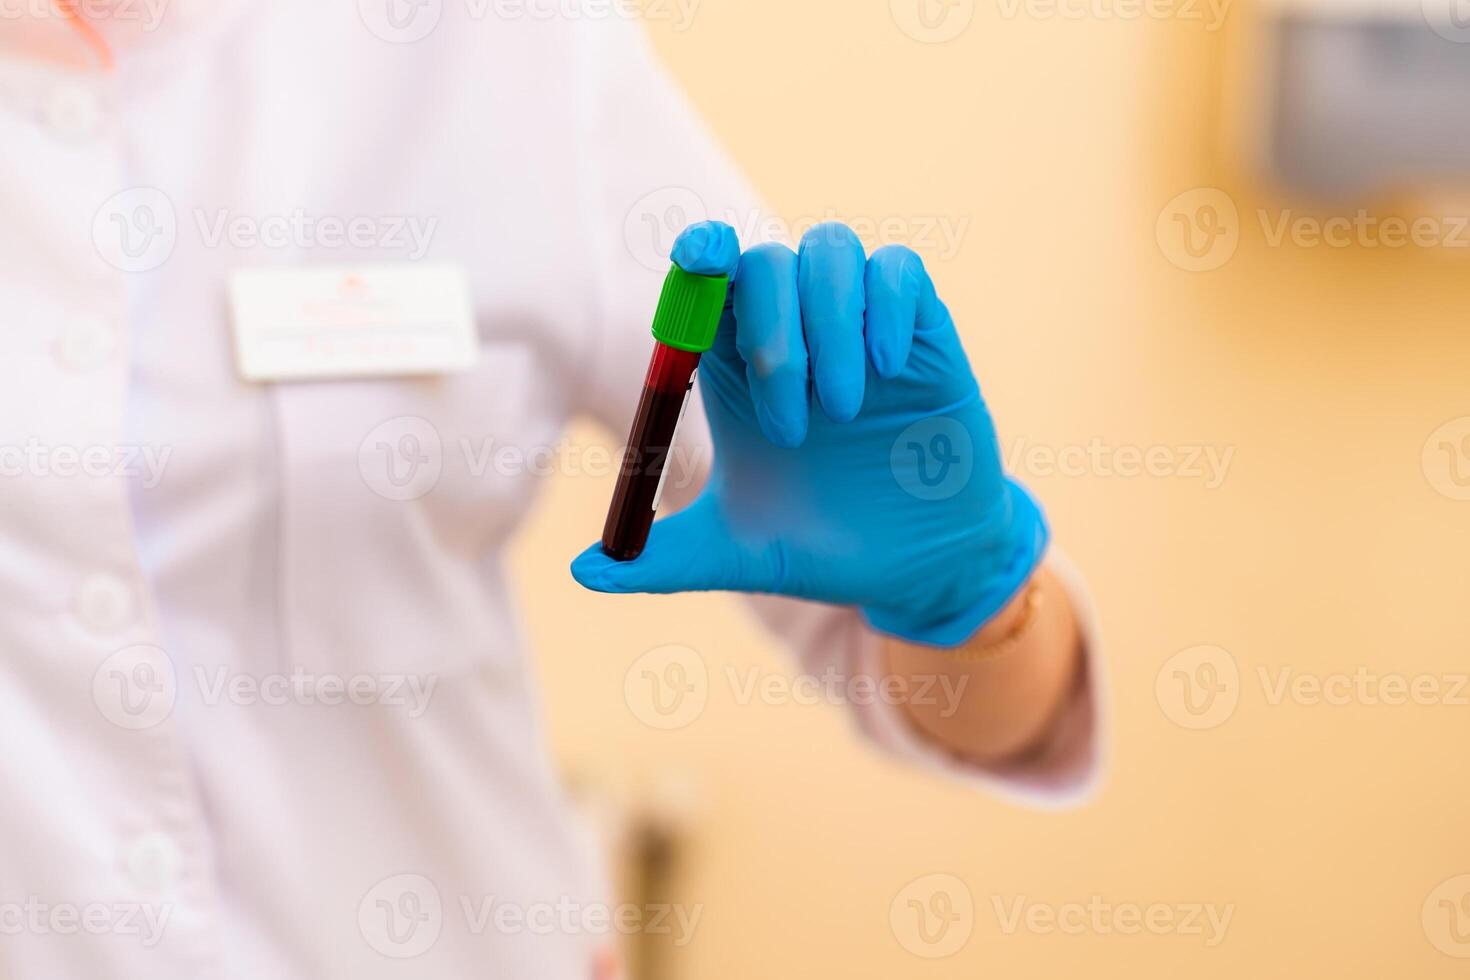 sangue laboratório. doença teste. foto